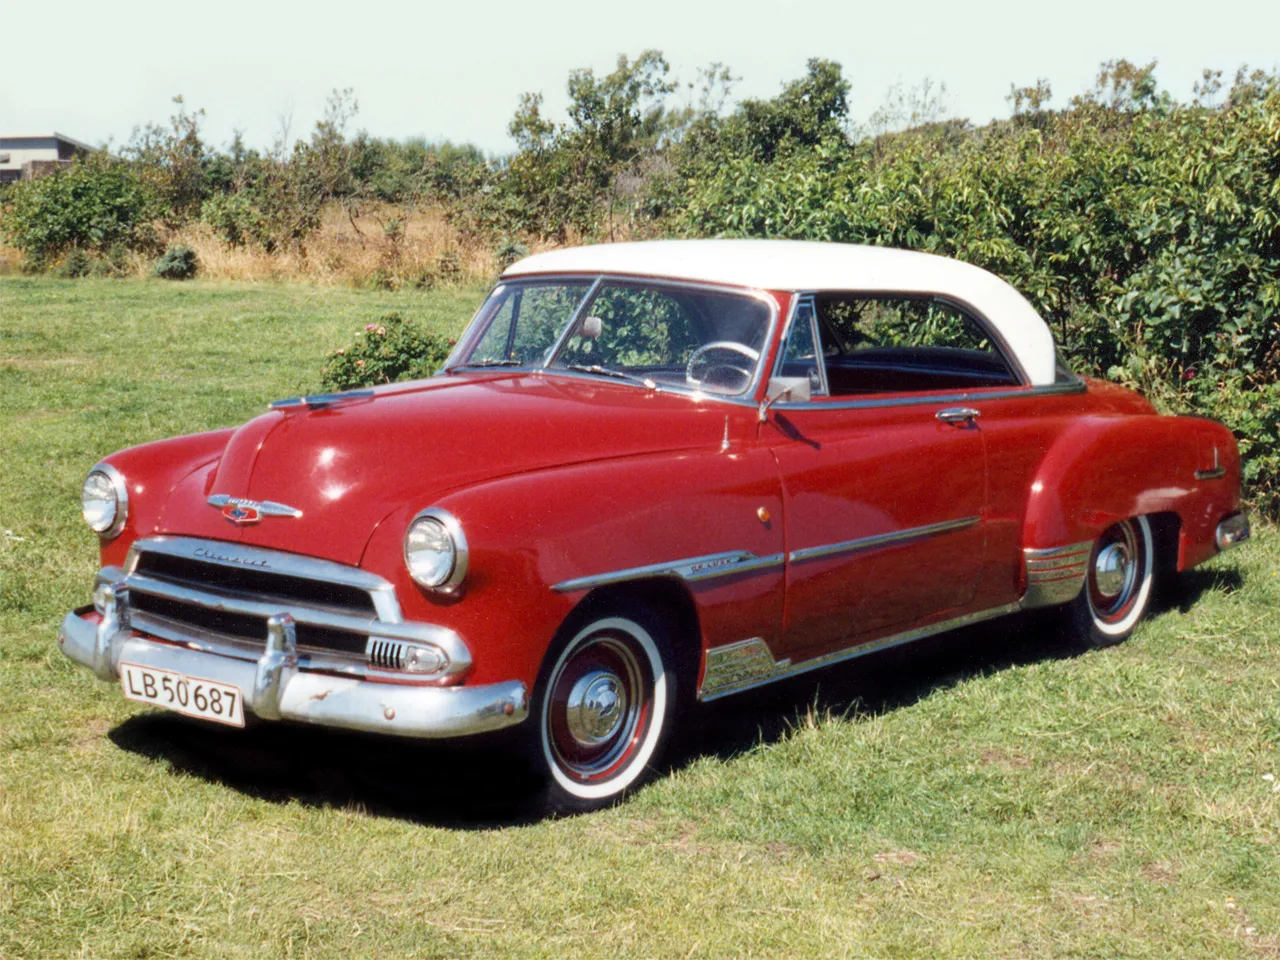 1951 Chevrolet DeLuxe Styleline Bel Air